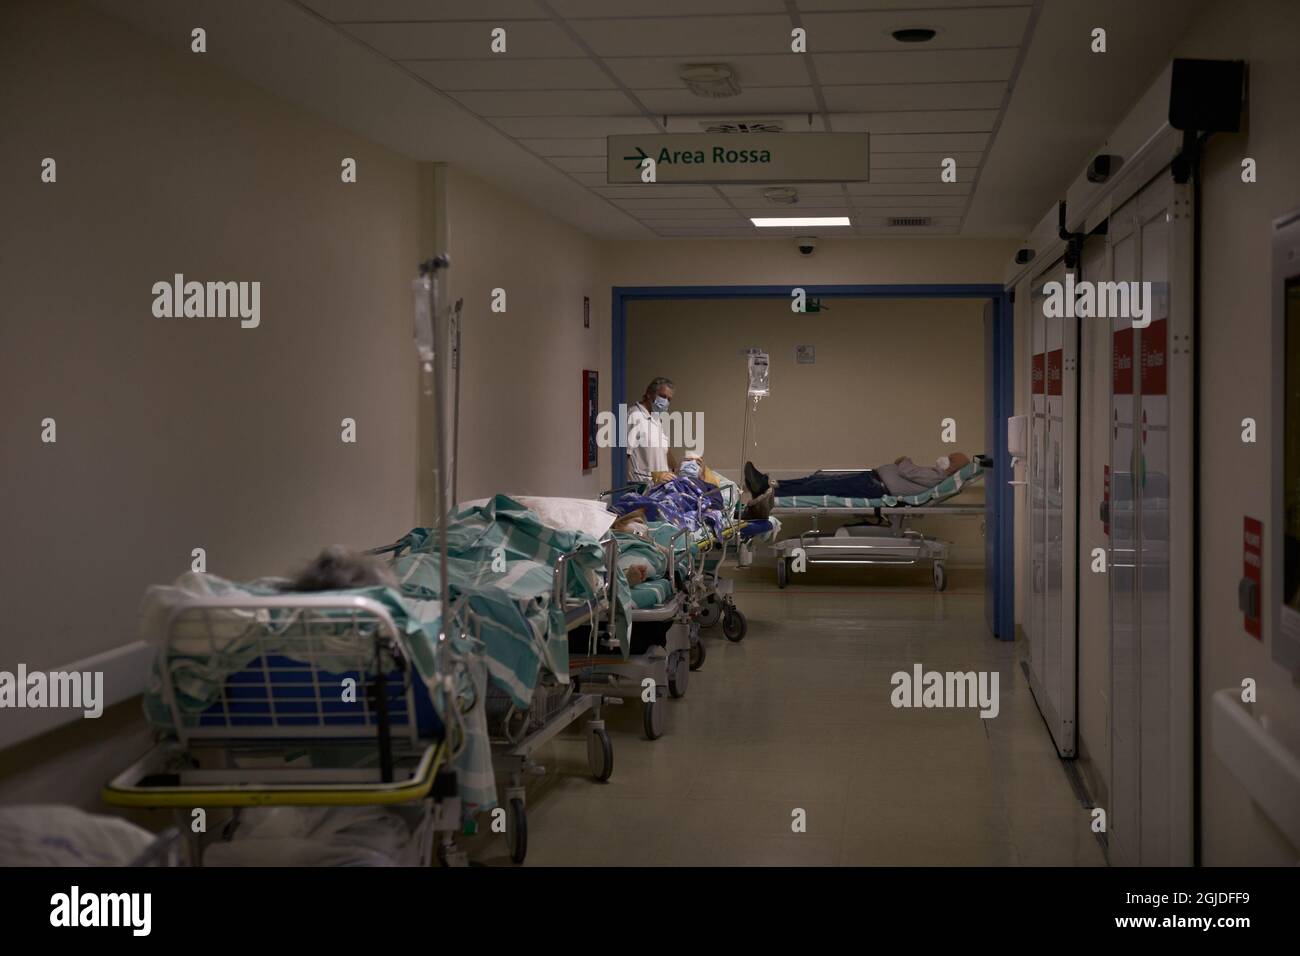 Bologne, ITALIE. 10 mars 2021. Les patients du service d'urgence Covid de l'Ospedale Maggiore attendent d'être examinés par le personnel médical. Bol Banque D'Images